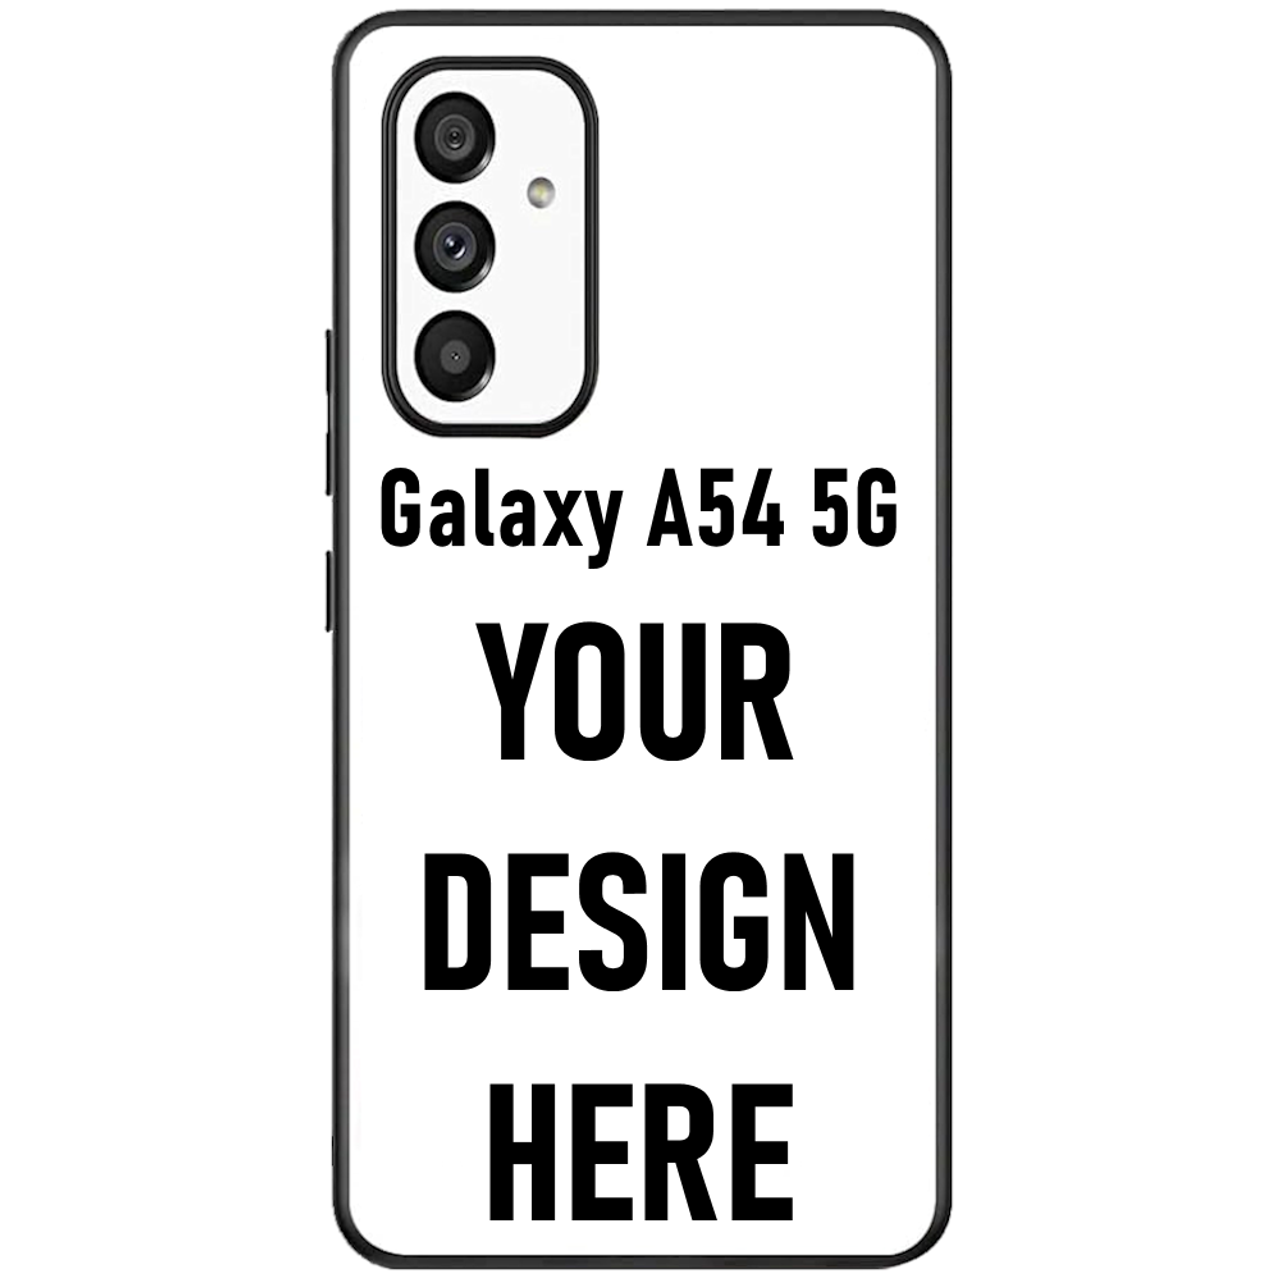 Samsung Galaxy A54, Smartphones